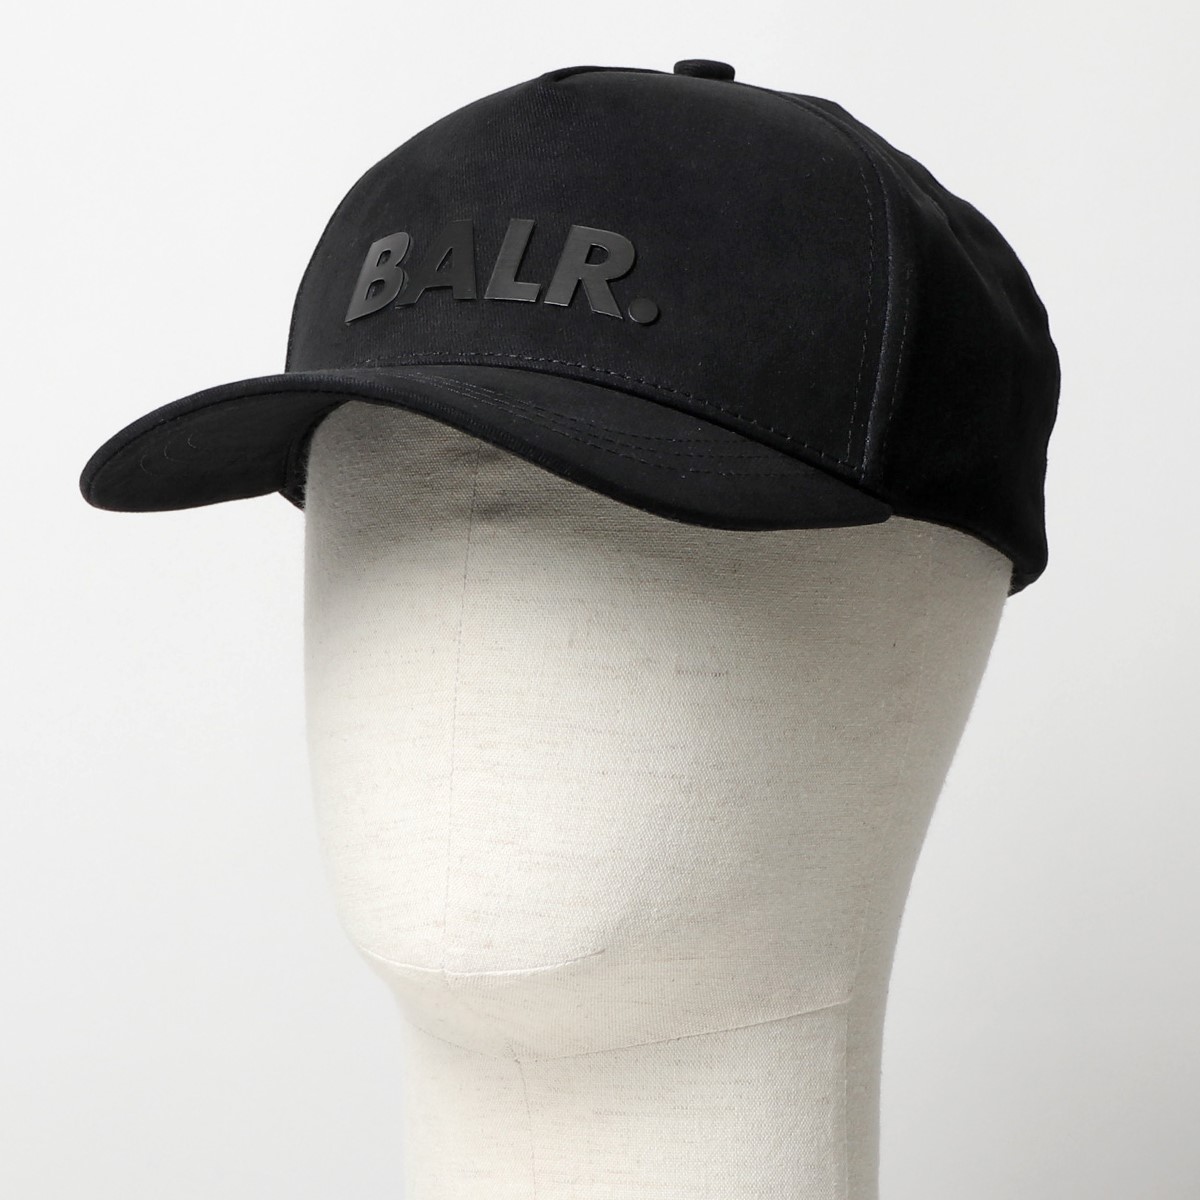 楽天市場 Balr ボーラー B Lounge Cap カラー2色 ロゴ ベースボールキャップ 帽子 メンズ インポートセレクト Musee